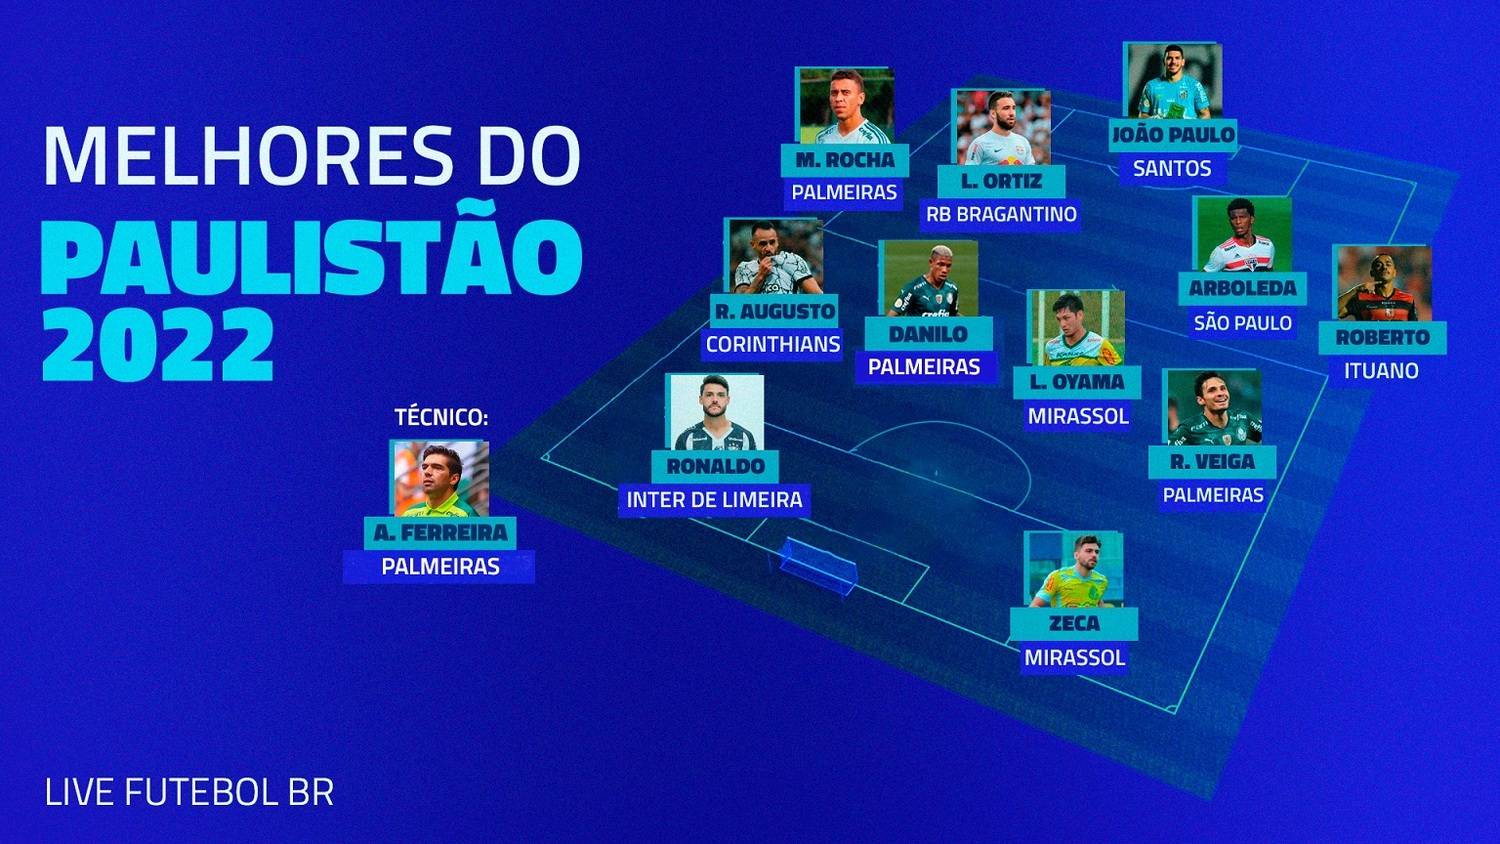 Seleção da primeira fase do Paulistão 2022 escolhida pela reportagem